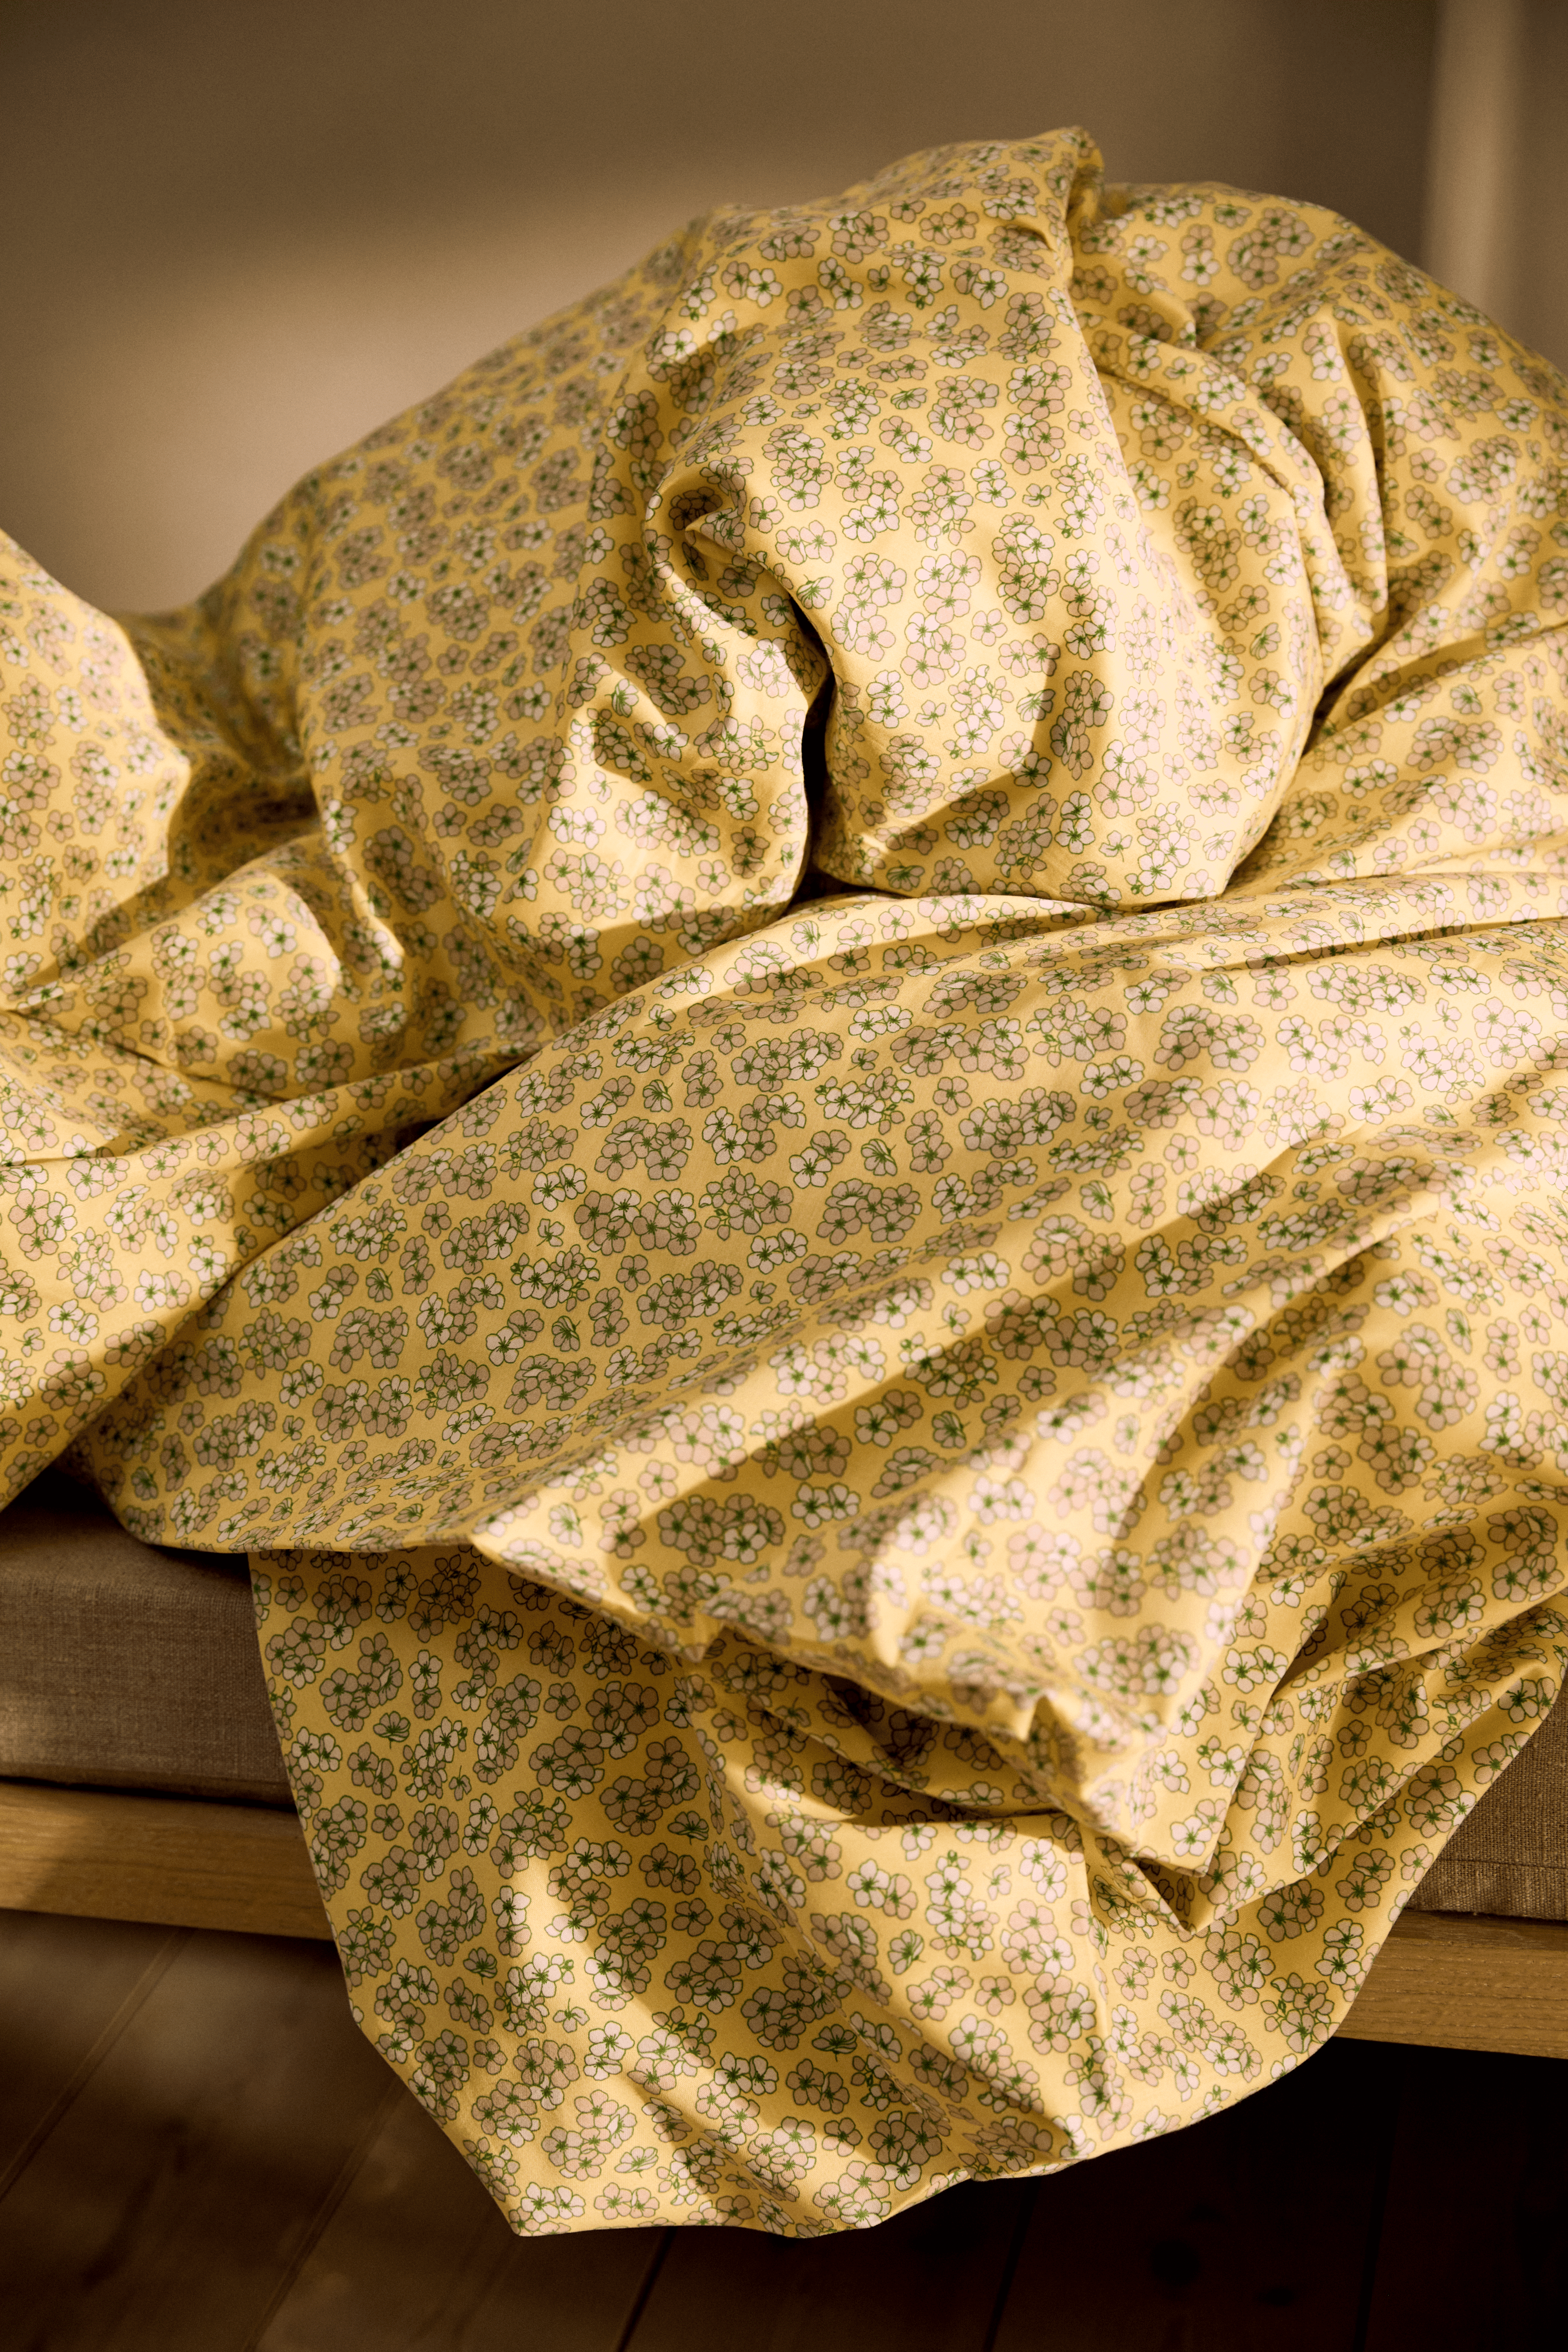 Bed linen 150x210 cm